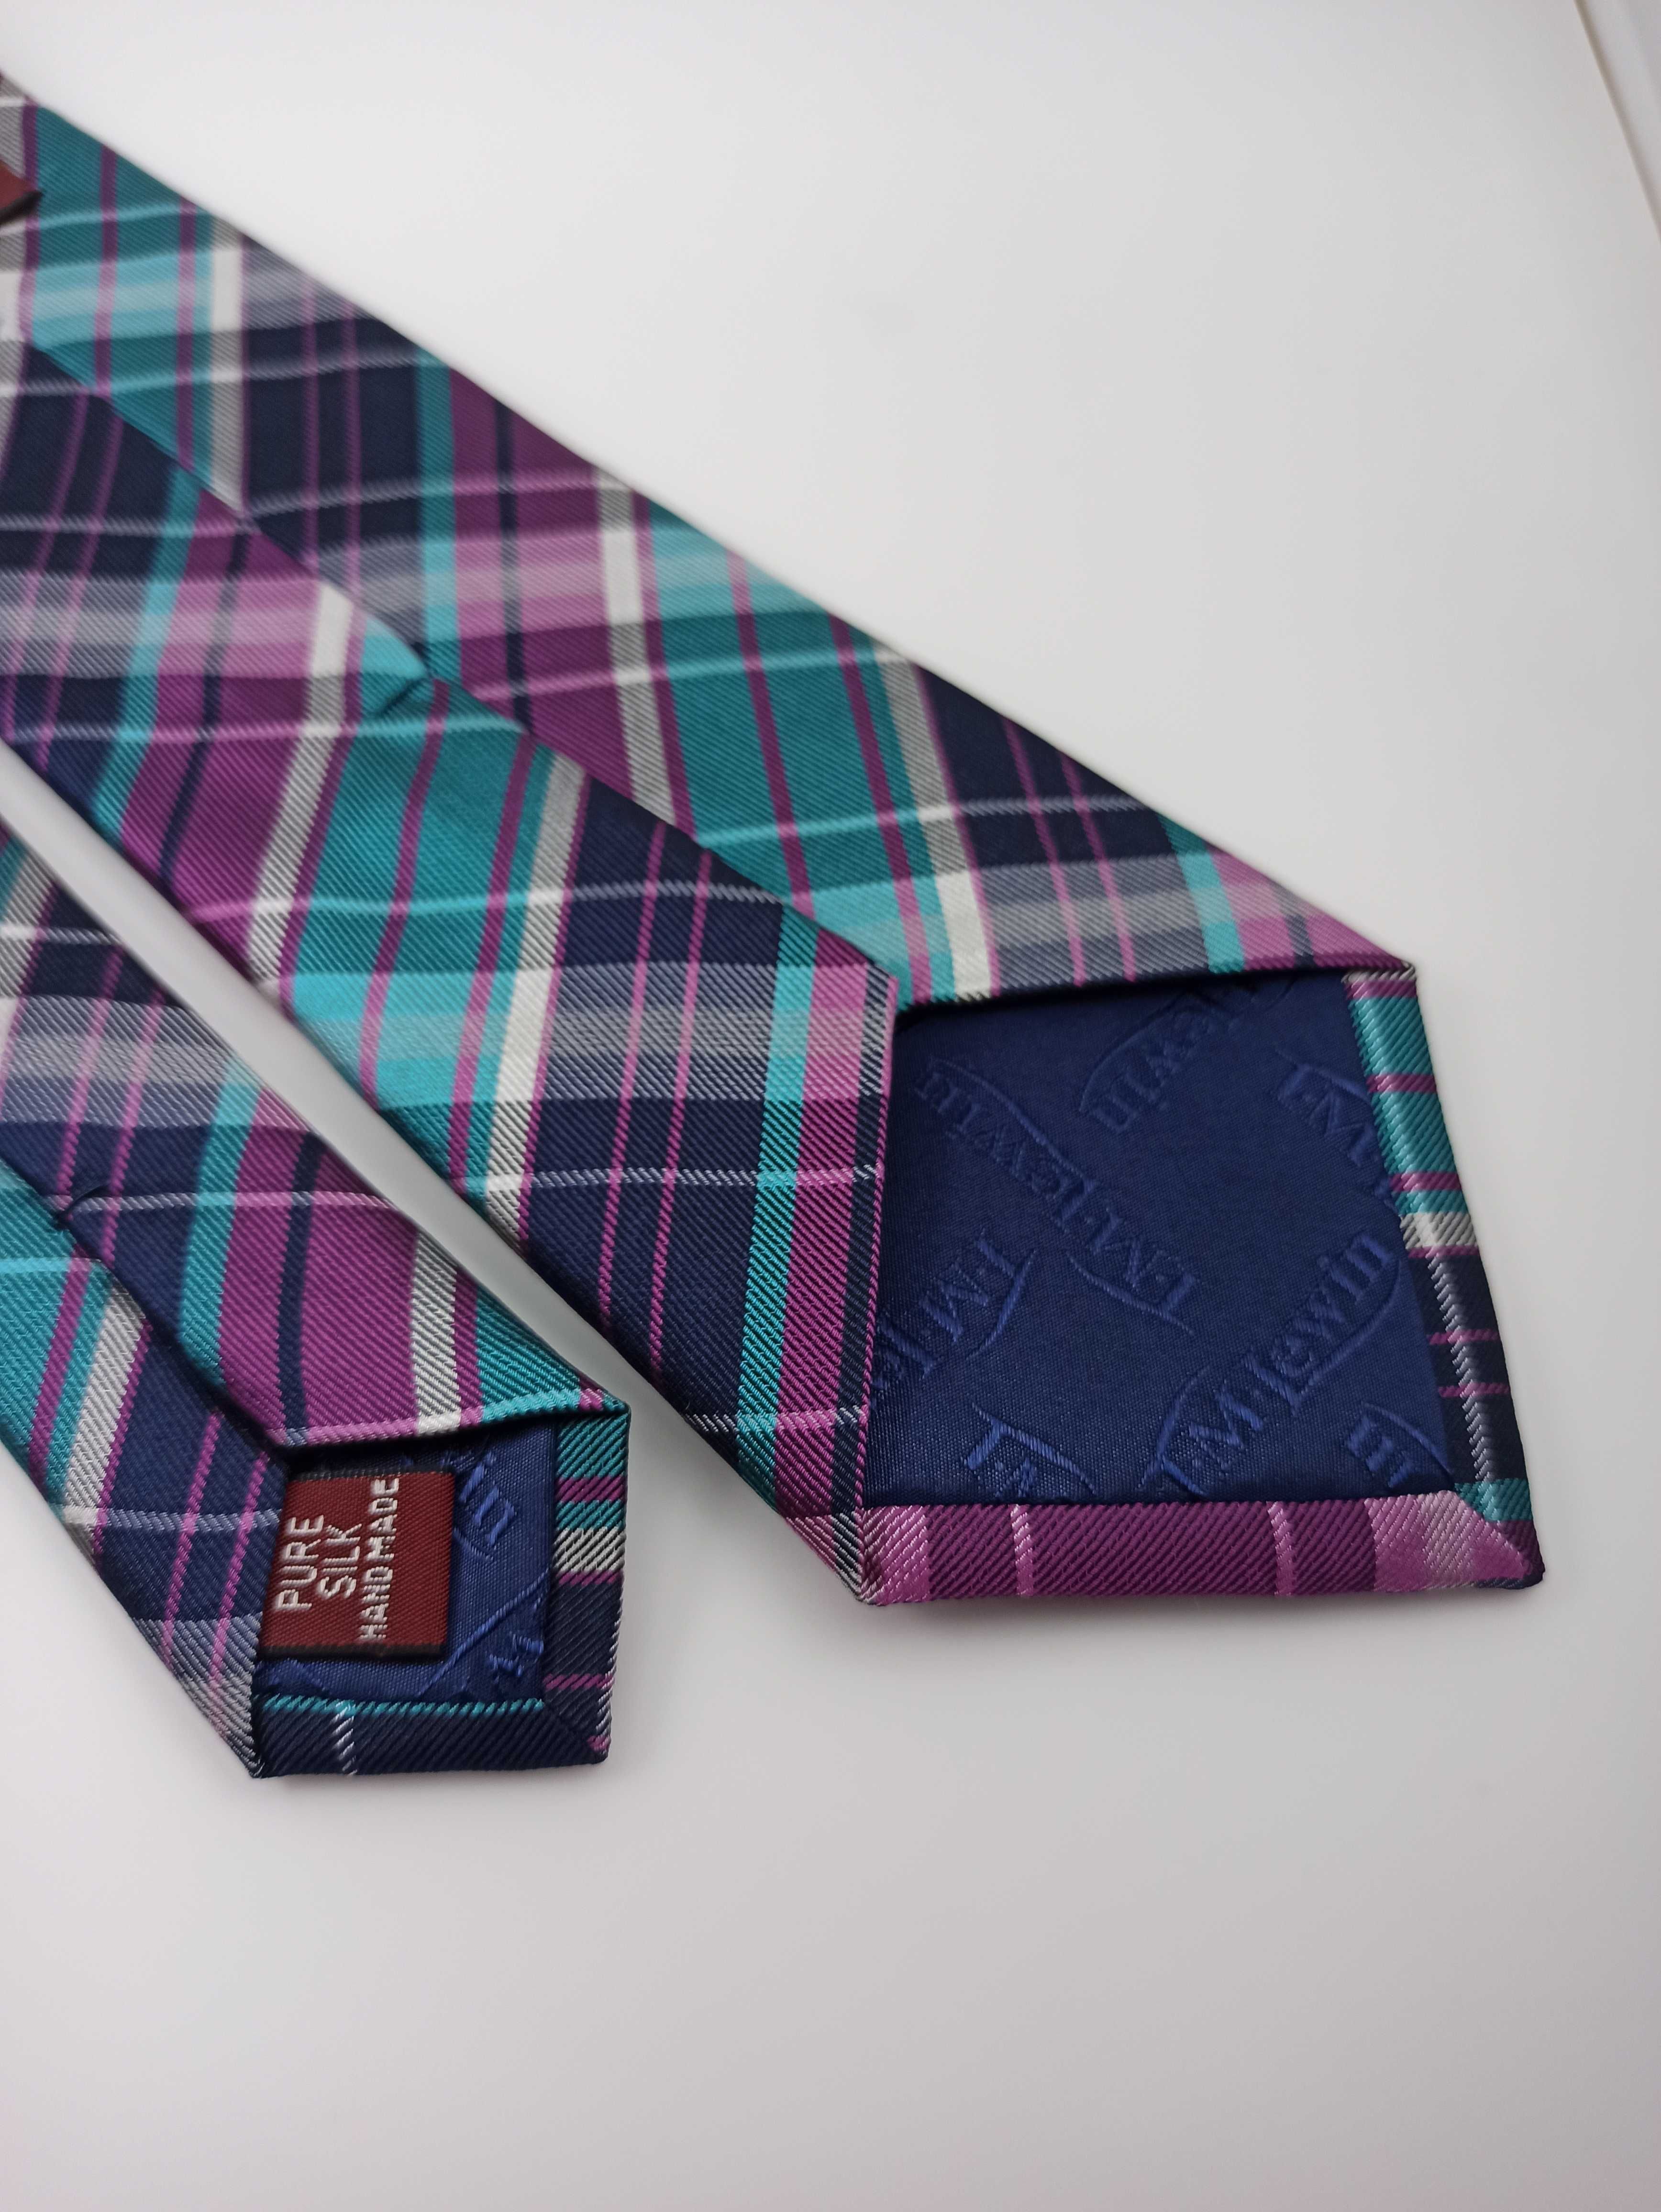 TM Lewin niebieski jedwabny krawat w kratkę